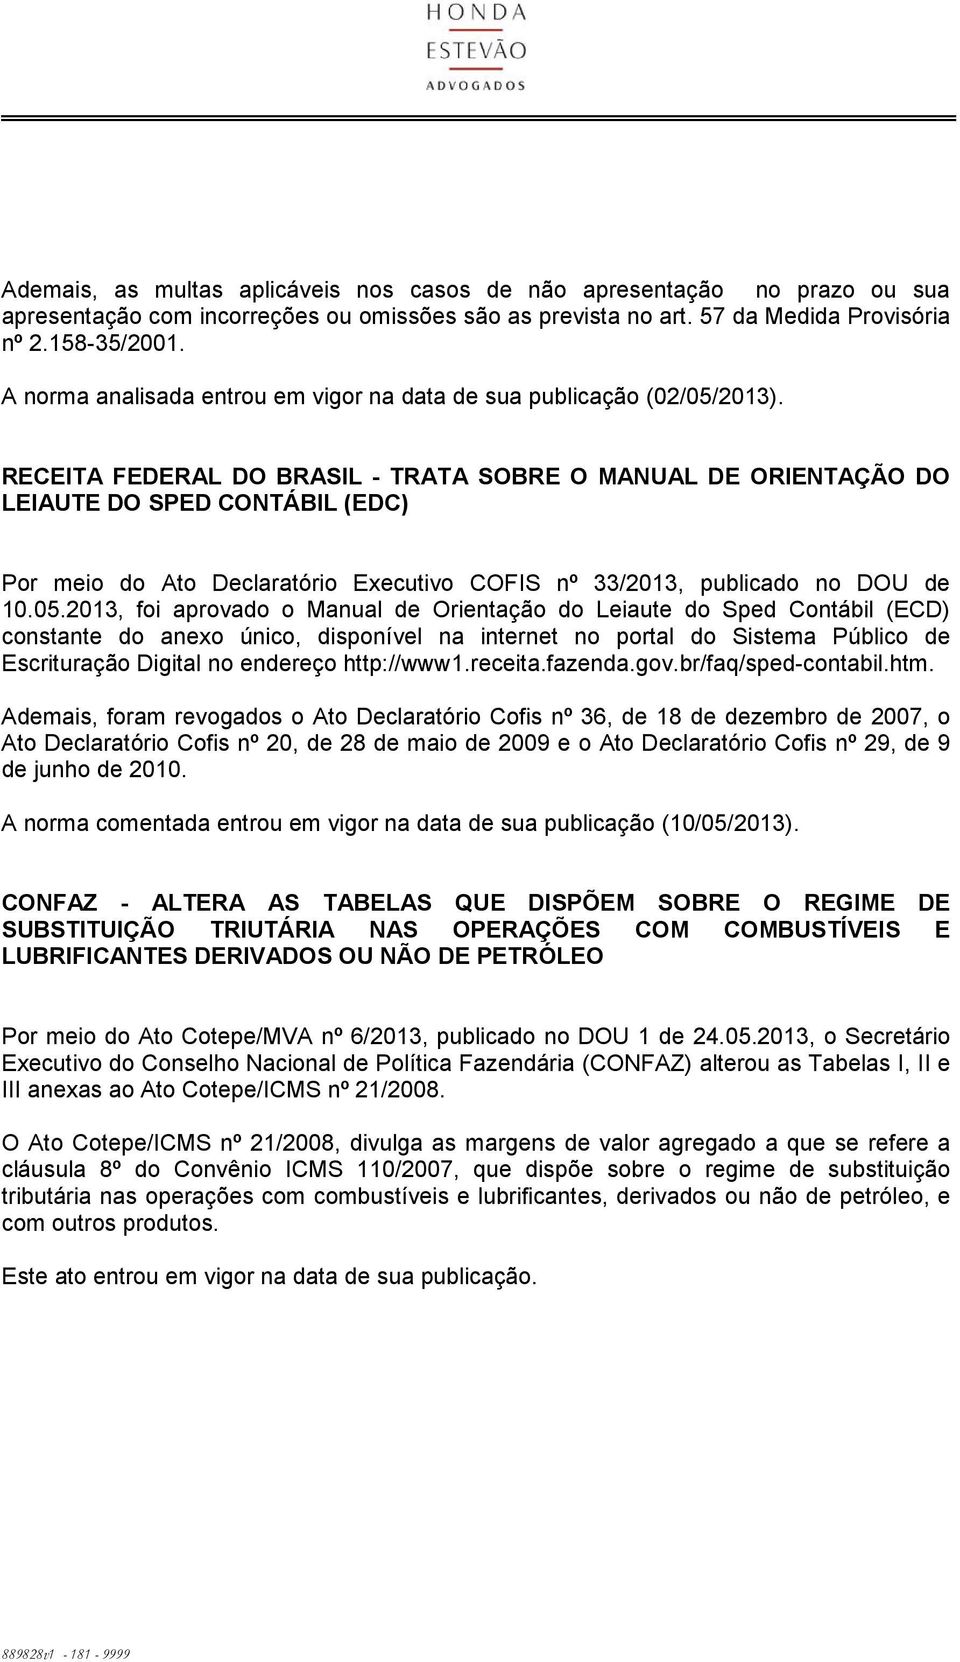 RECEITA FEDERAL DO BRASIL - TRATA SOBRE O MANUAL DE ORIENTAÇÃO DO LEIAUTE DO SPED CONTÁBIL (EDC) Por meio do Ato Declaratório Executivo COFIS nº 33/2013, publicado no DOU de 10.05.